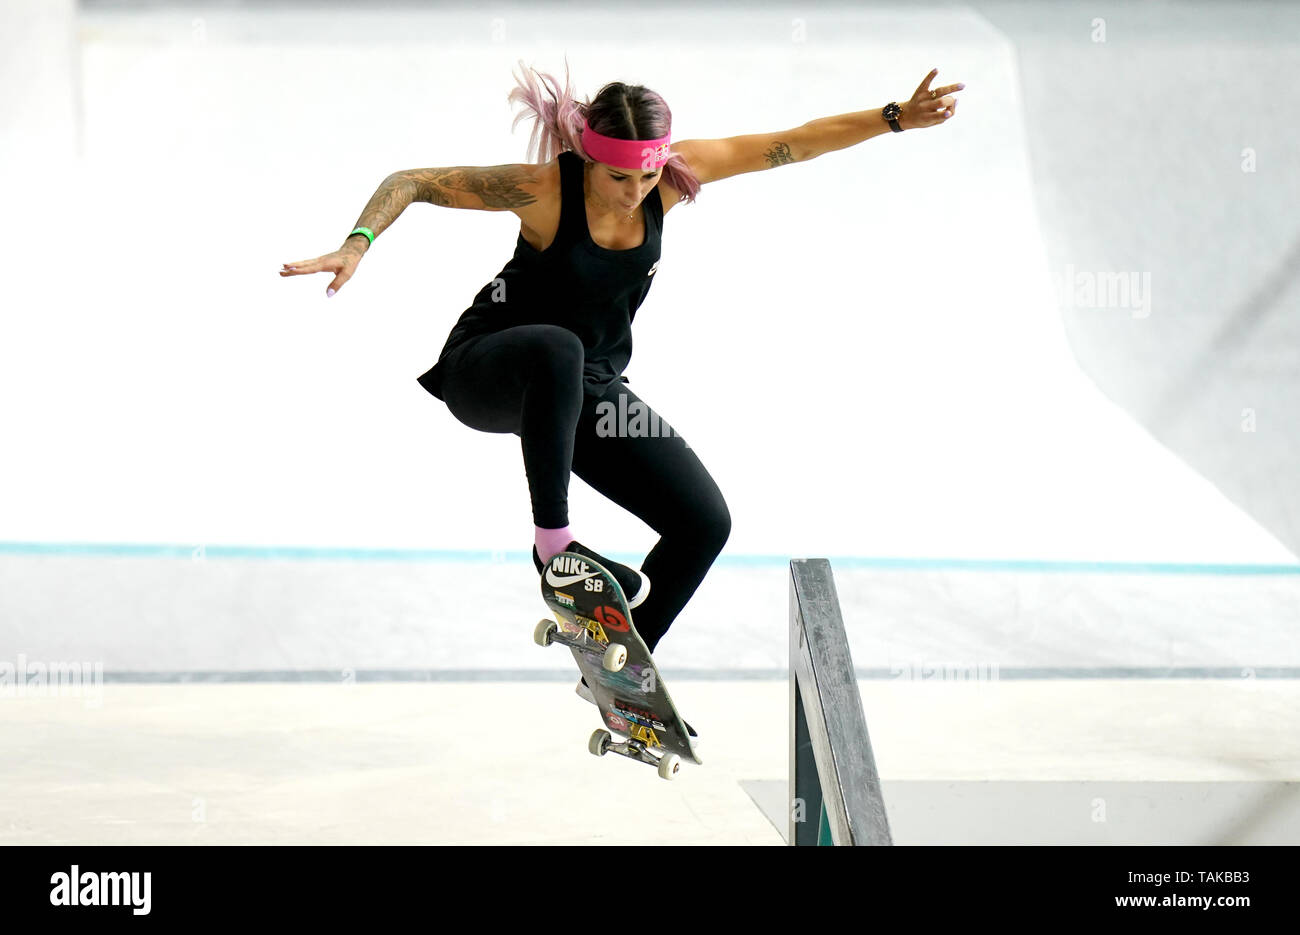 Día dos street league skateboarding world tour de cobre fotografías e imágenes de alta resolución - Alamy